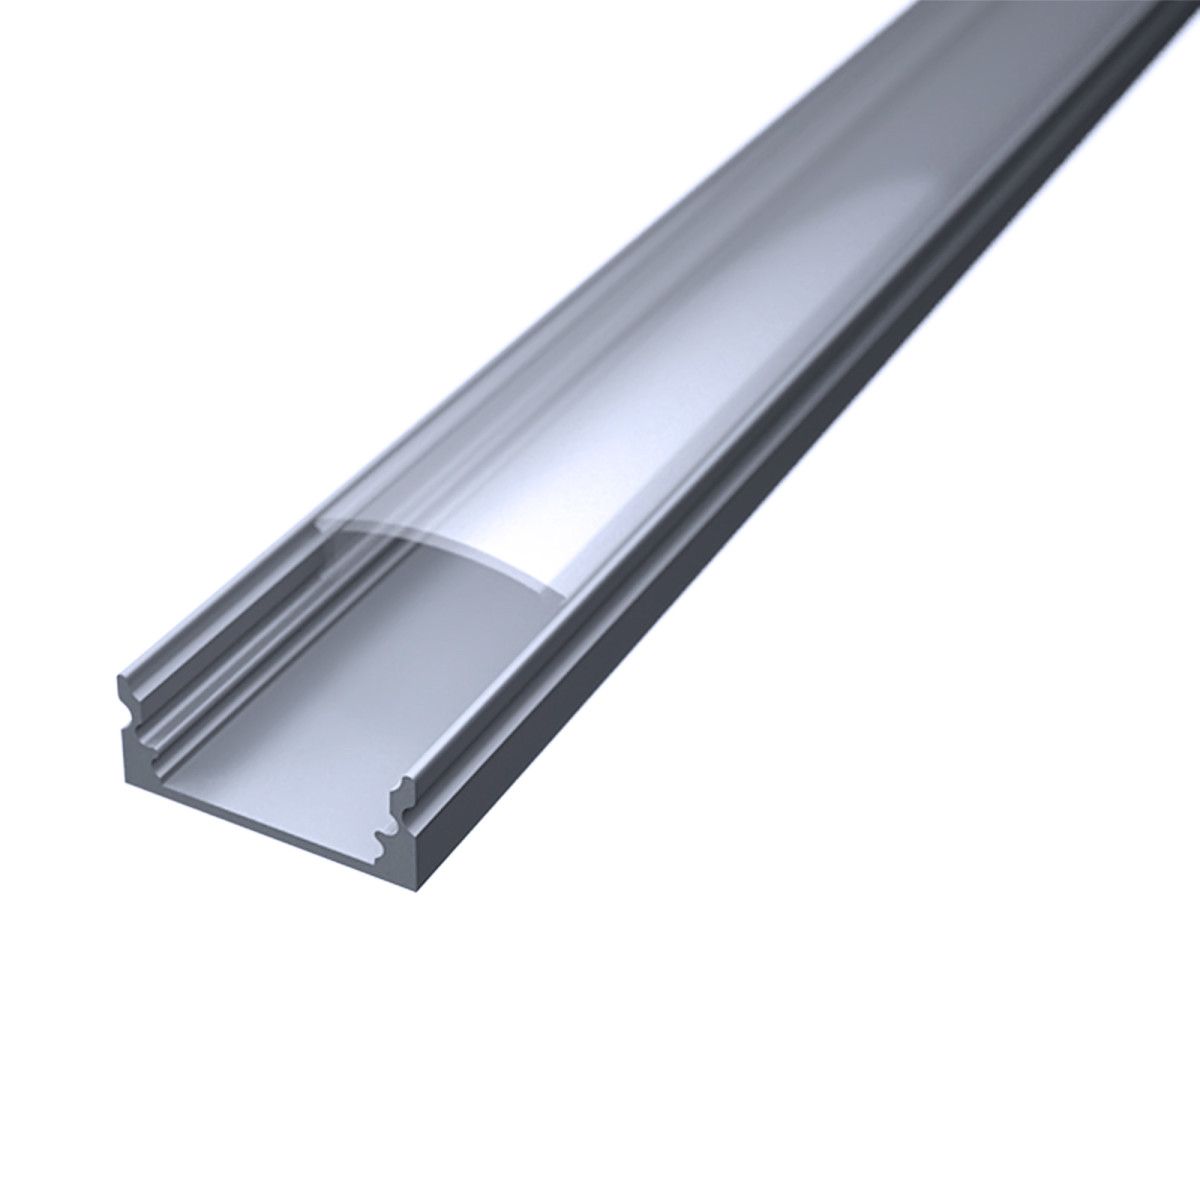 LED Flachprofil "Slim-Line" | Abdeckung transparent | Zuschnitt auf 88cm |